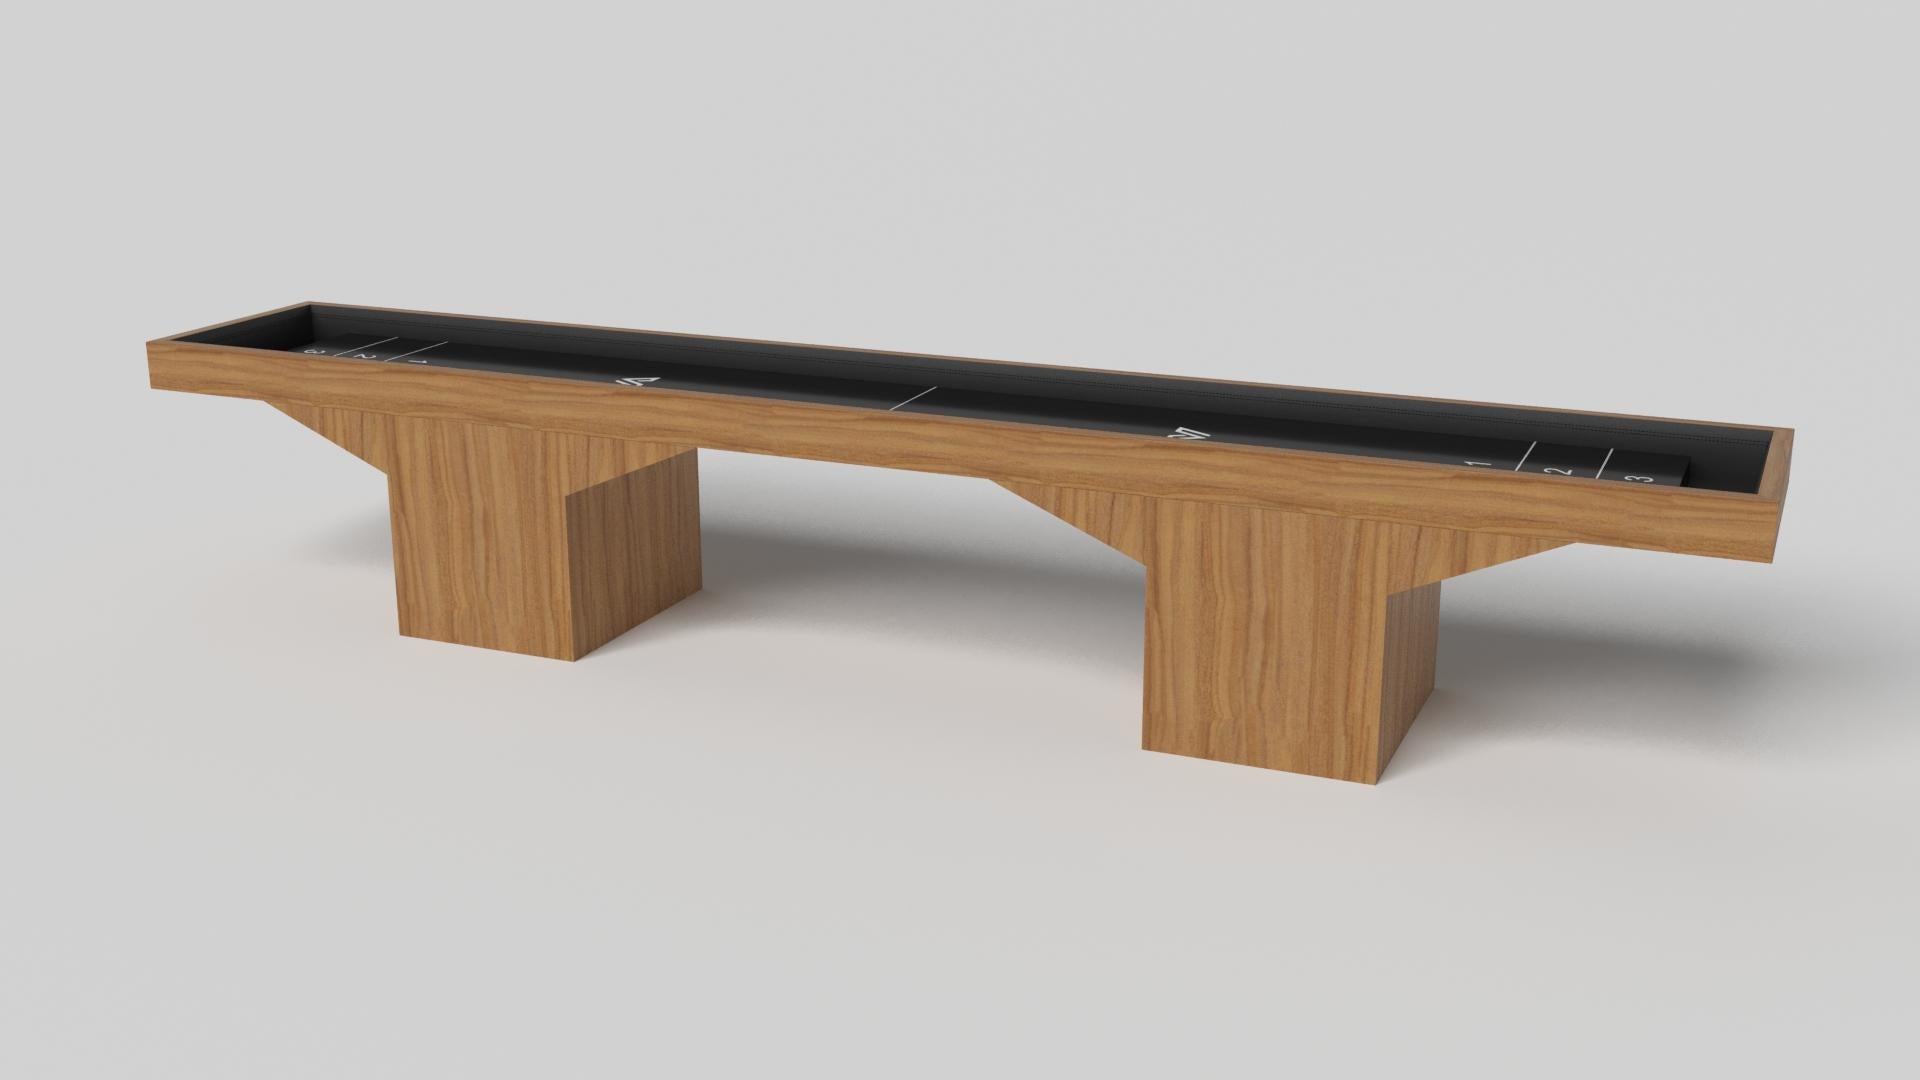 Minimalistisches Design trifft beim Trestle Shuffleboard-Tisch auf opulente Eleganz. Dieser moderne Tisch ist mit einer professionellen Oberfläche für endloses Spiel ausgestattet und wurde fachmännisch hergestellt. Die quadratischen Blockbeine